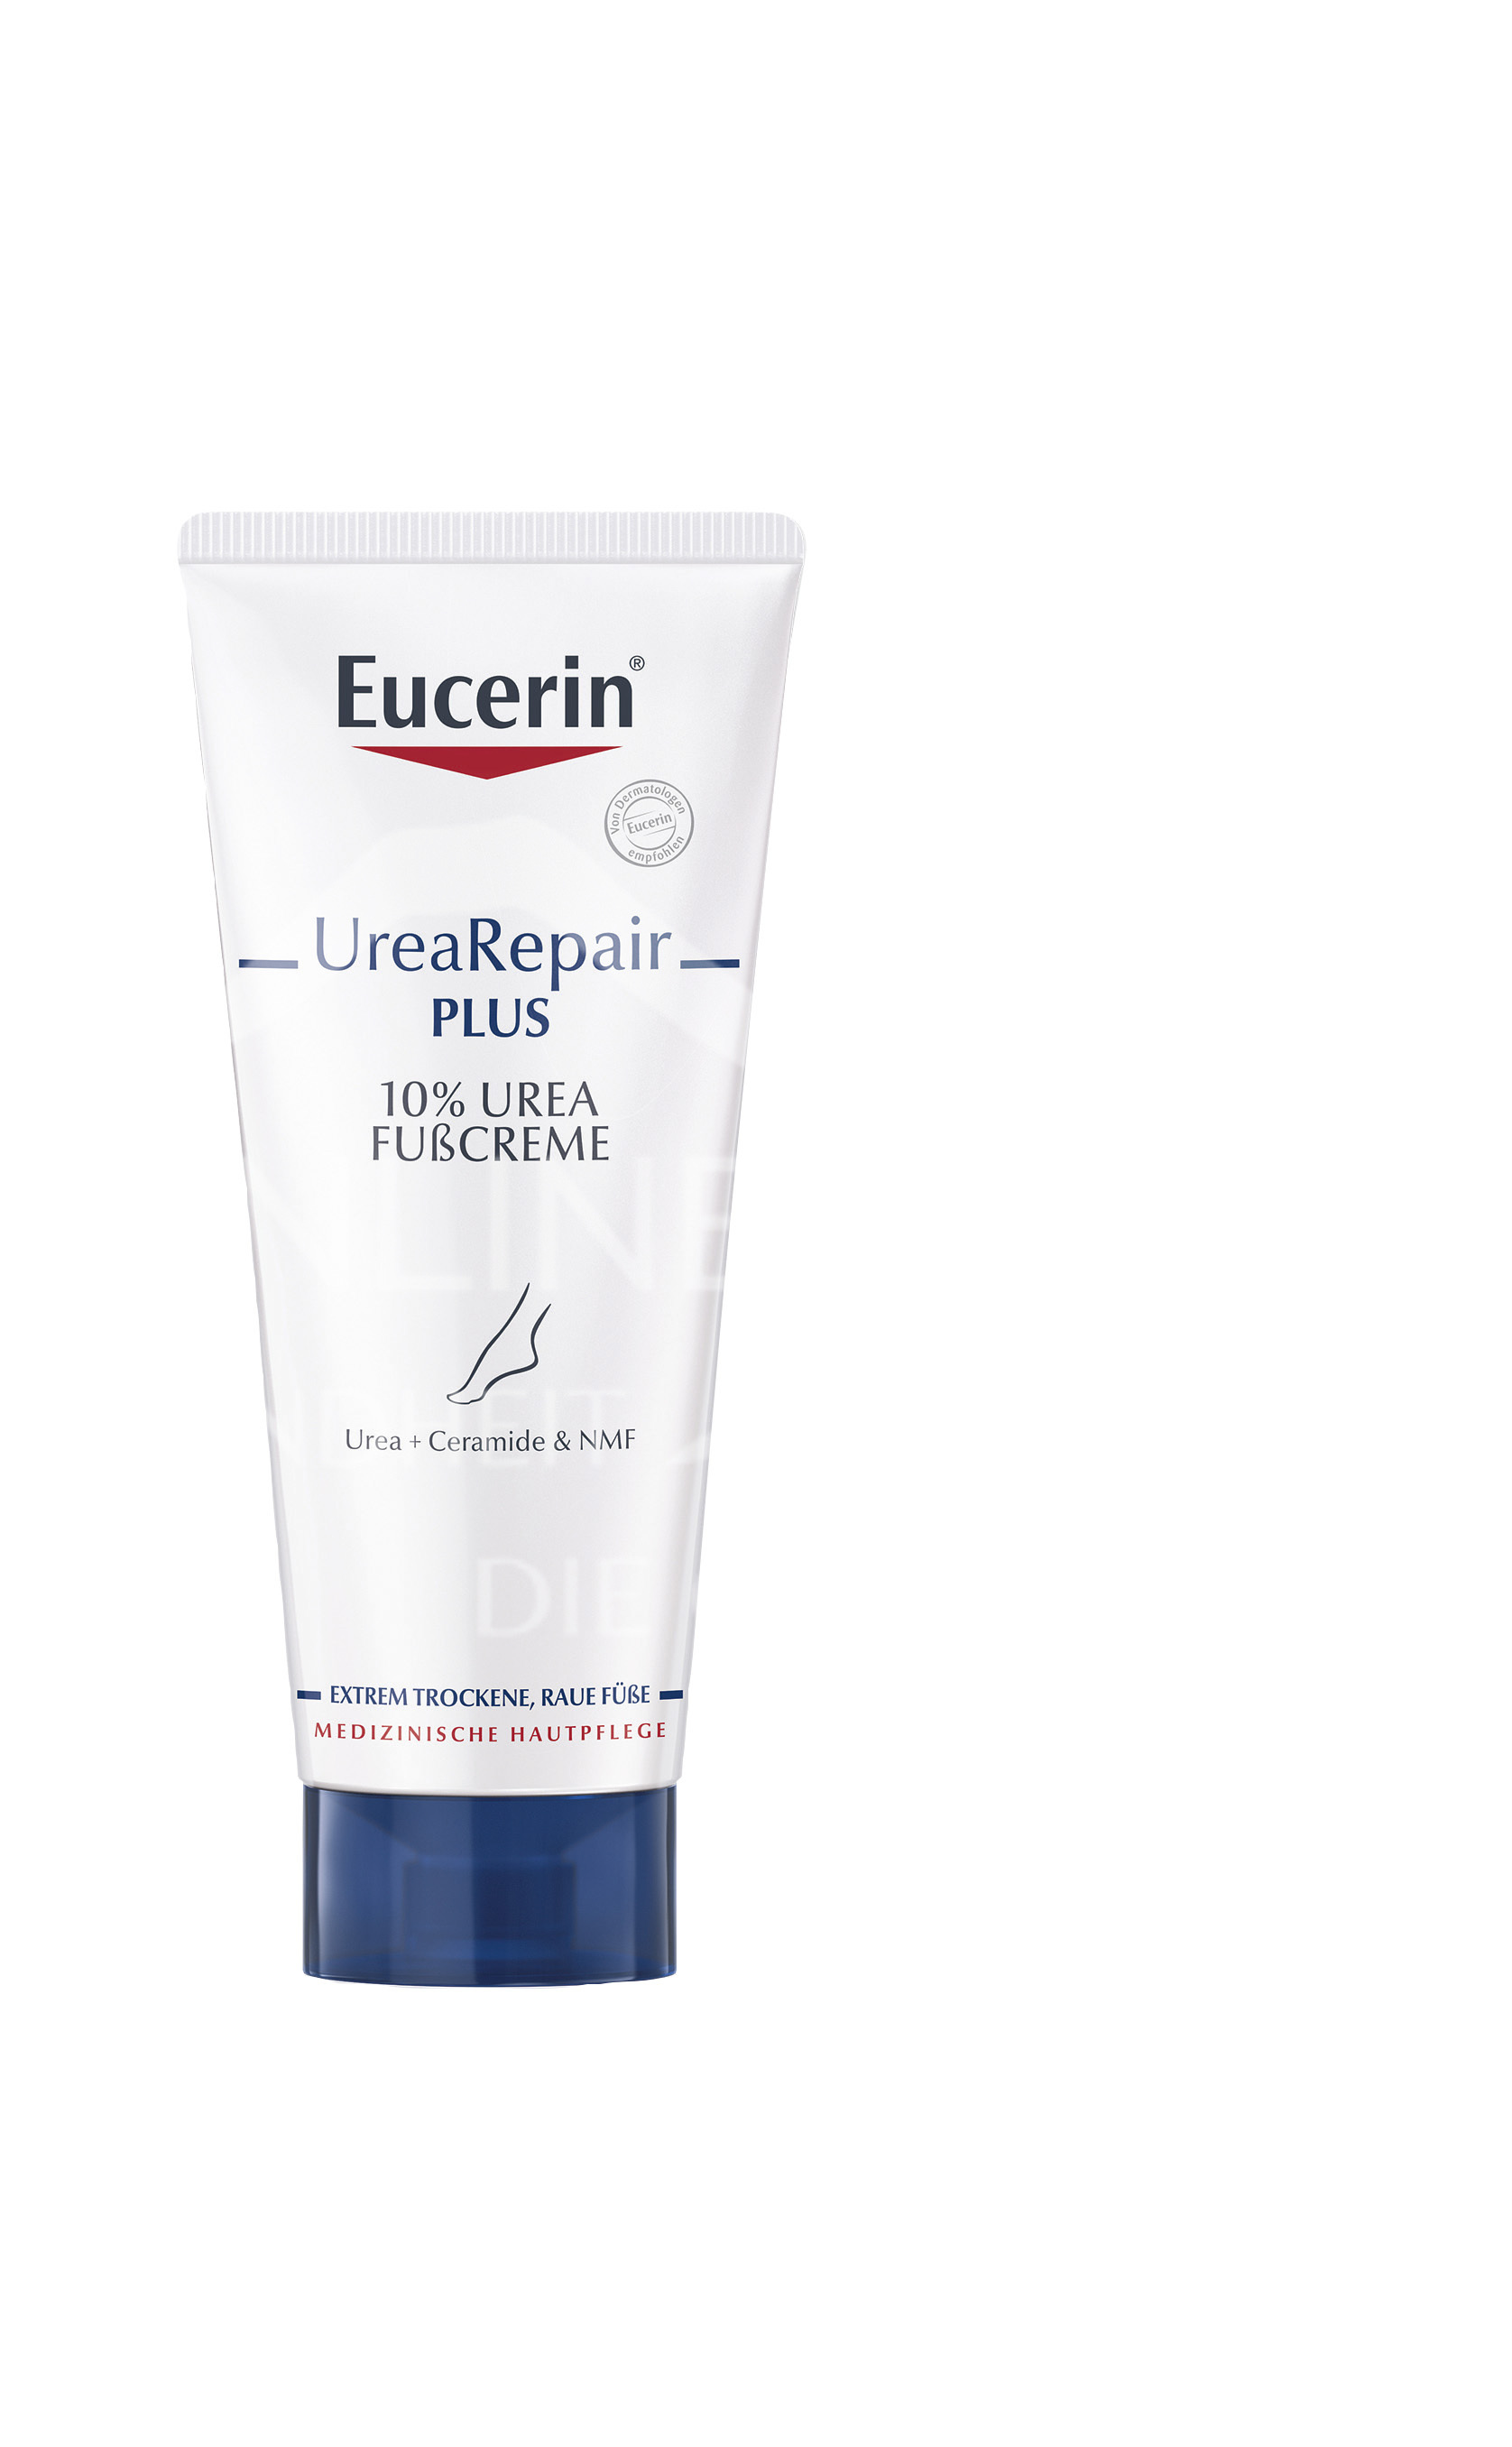 Eucerin® UreaRepair PLUS 10% Urea Fußcreme